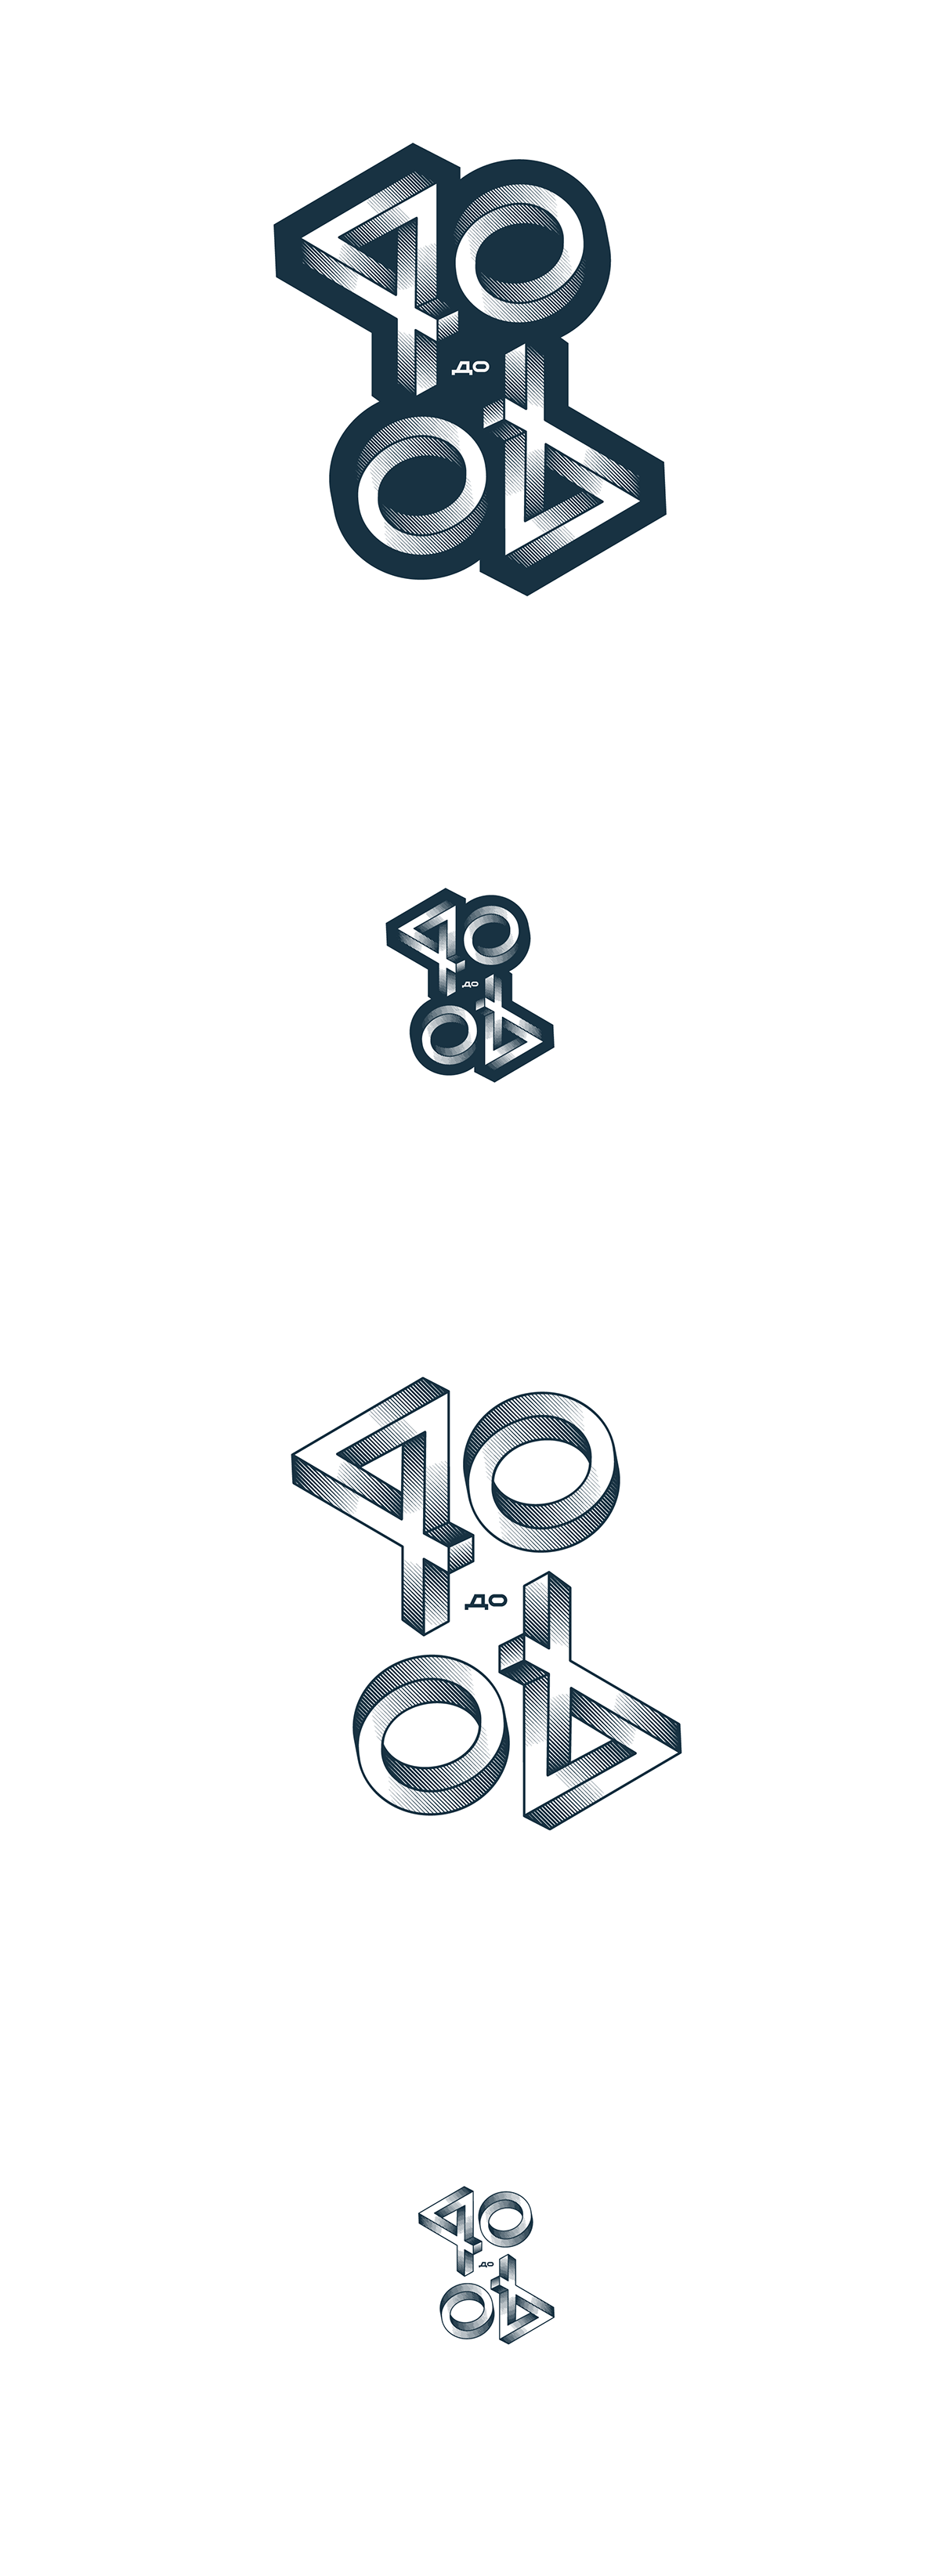 40Under40 logo design rebranding Darik penrose halftone numbers